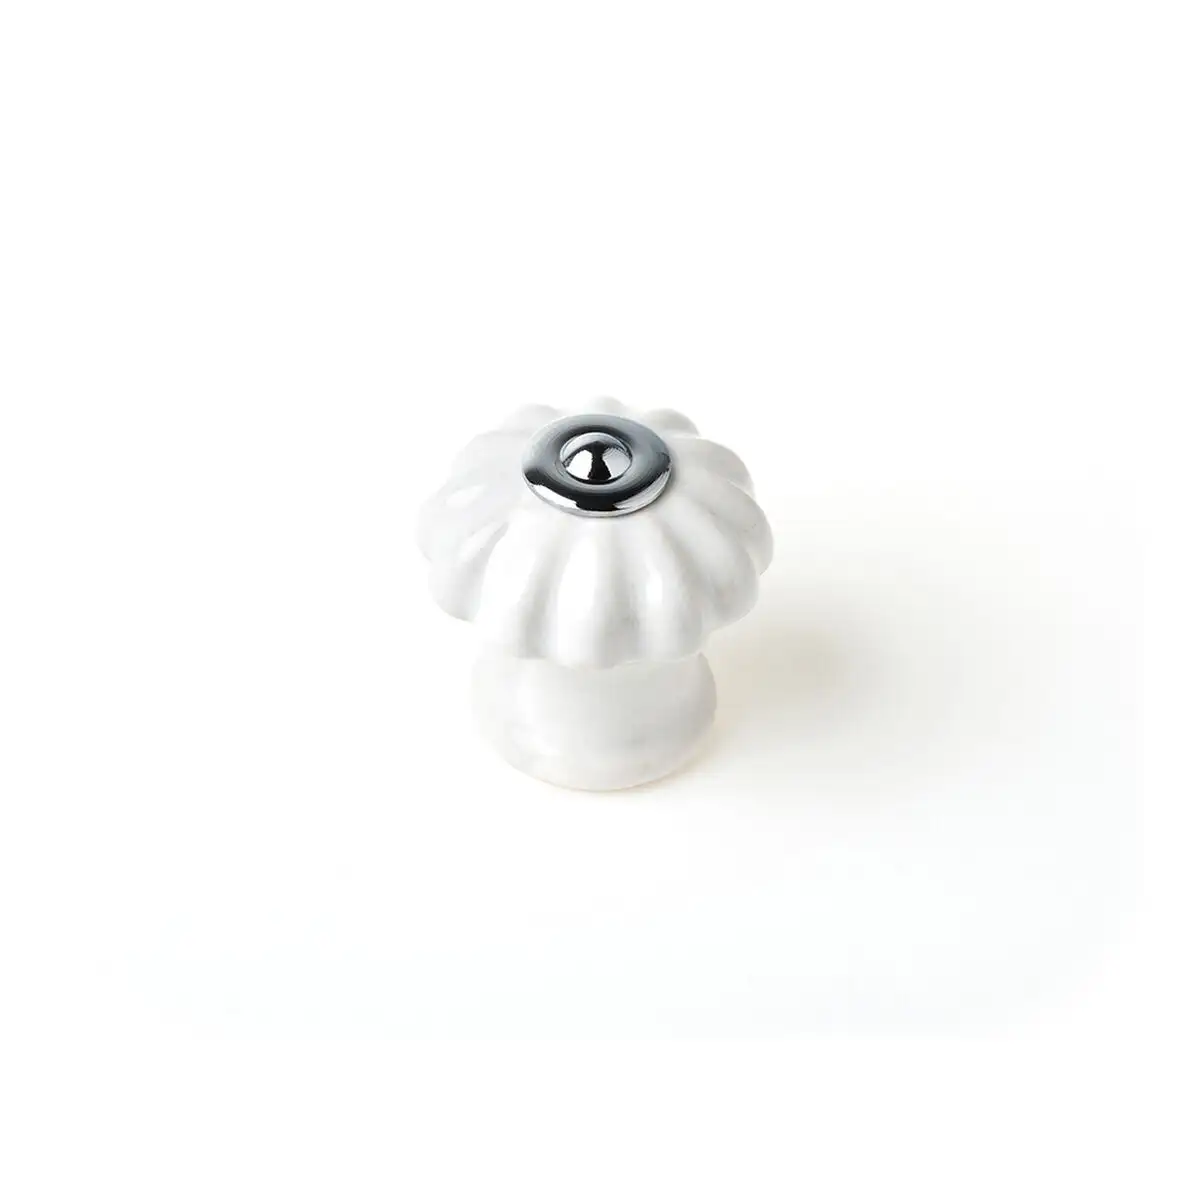 Pommeau rei e524 rond porcelaine metal blanc 4 unites o 28 x 27 mm _2354. Découvrez DIAYTAR SENEGAL - Là où le Choix Rencontre la Qualité. Parcourez notre gamme diversifiée et choisissez parmi des produits conçus pour exceller dans tous les aspects de votre vie.